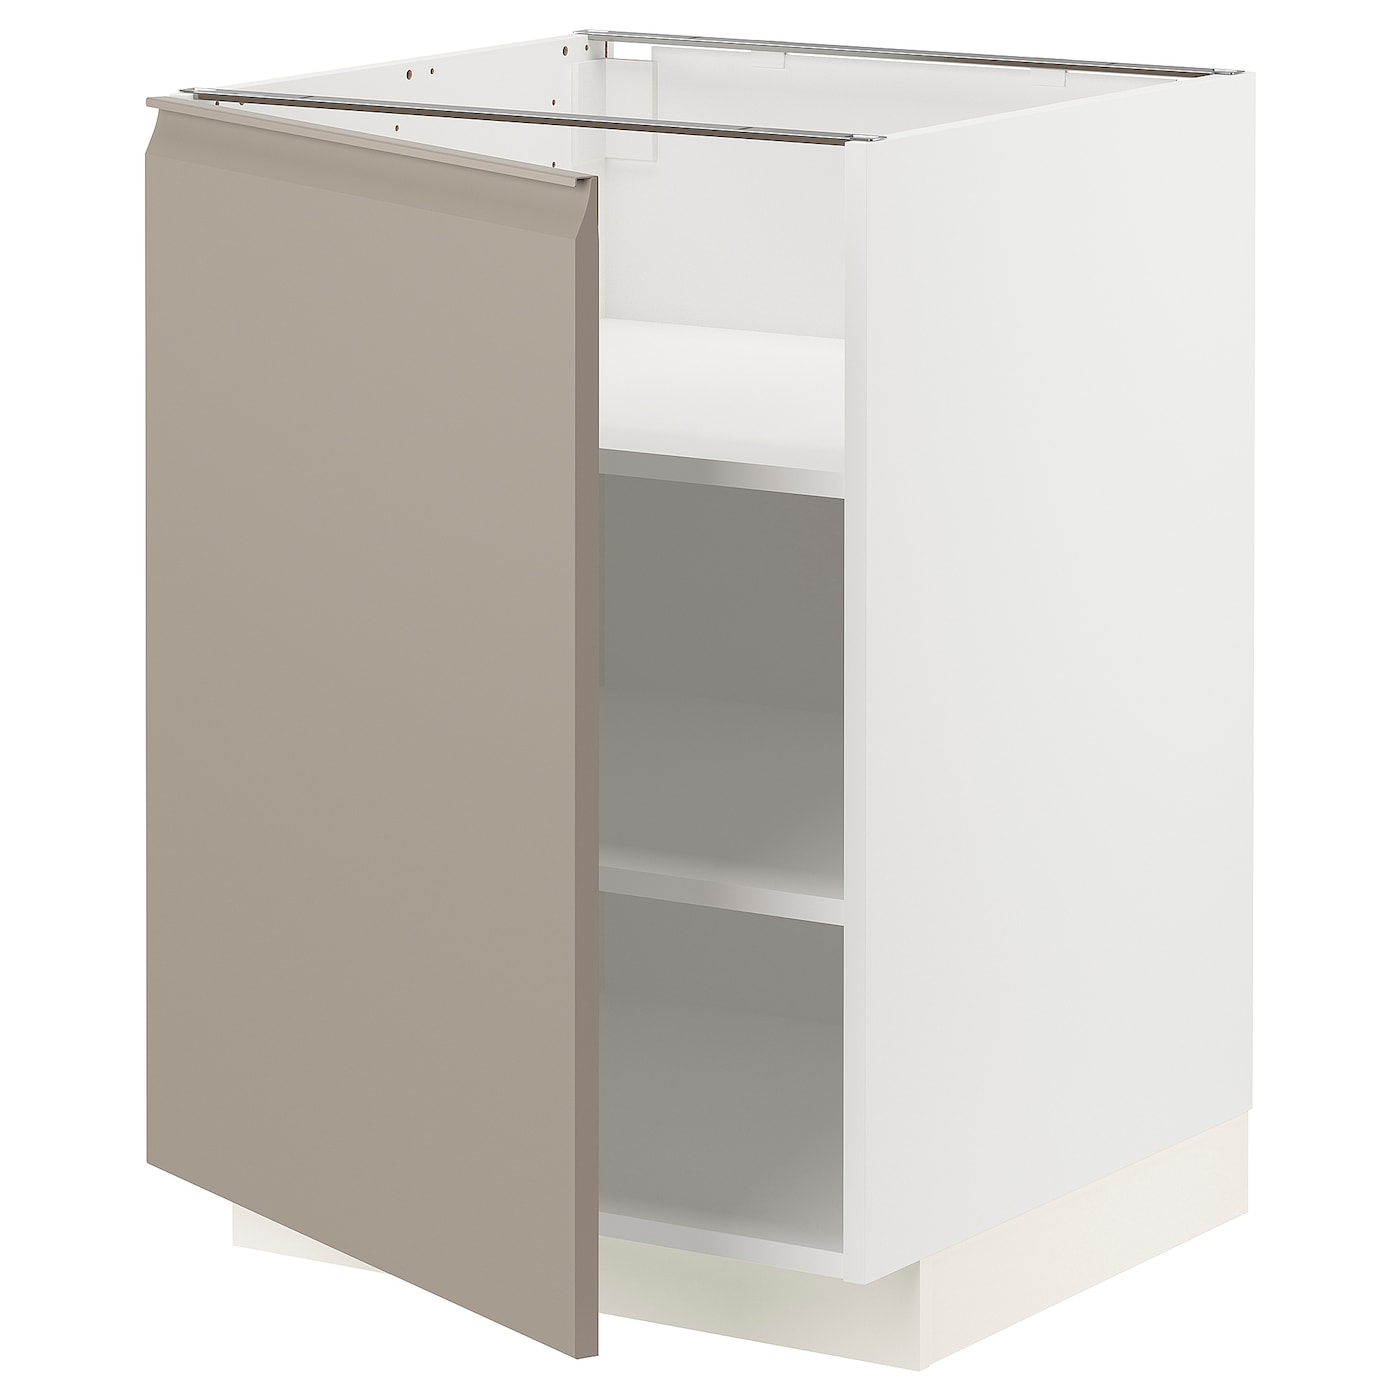 Напольный шкаф - IKEA METOD, 88x62x60см, белый/темно-бежевый, МЕТОД ИКЕА